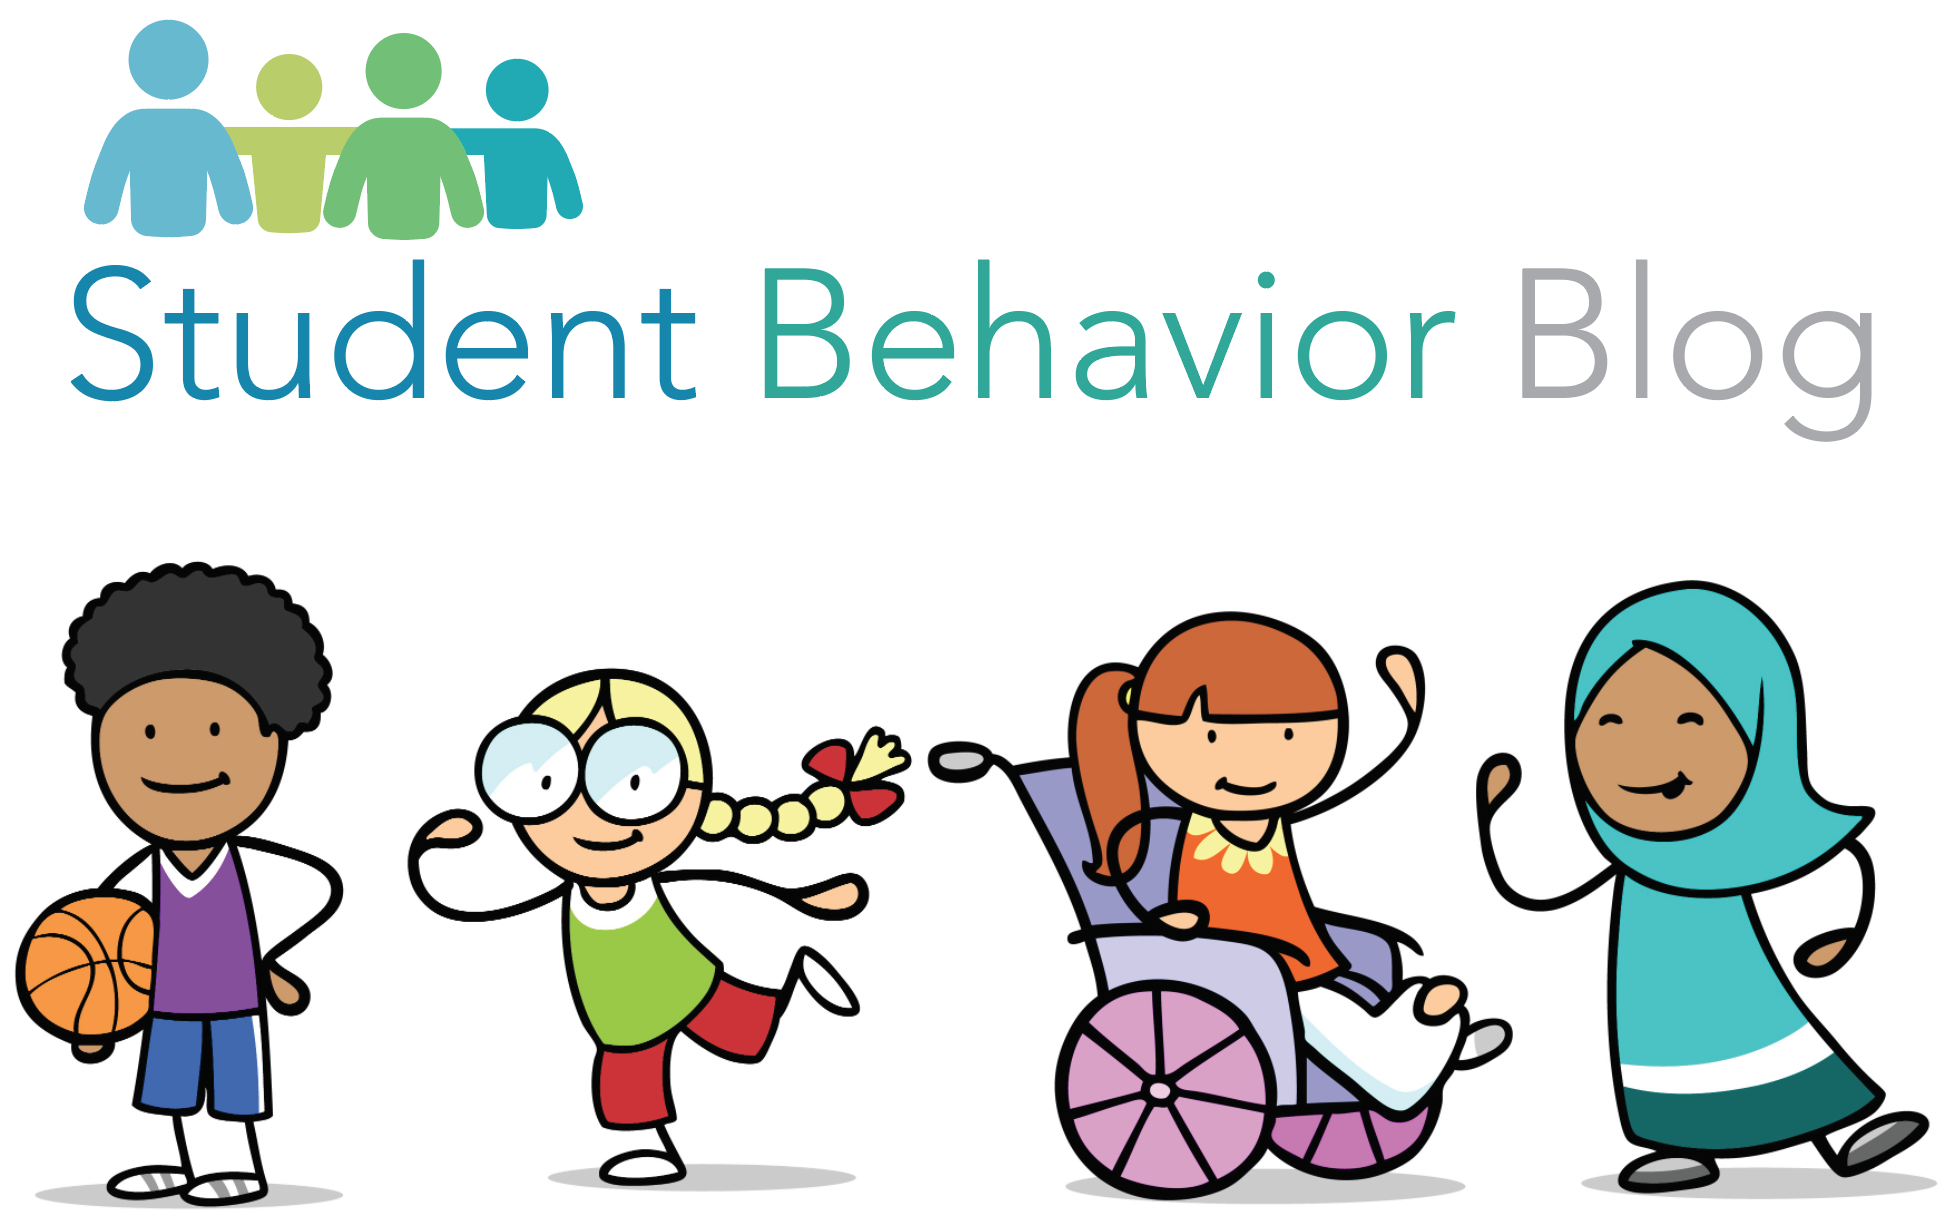 Student Behavior Blog logo